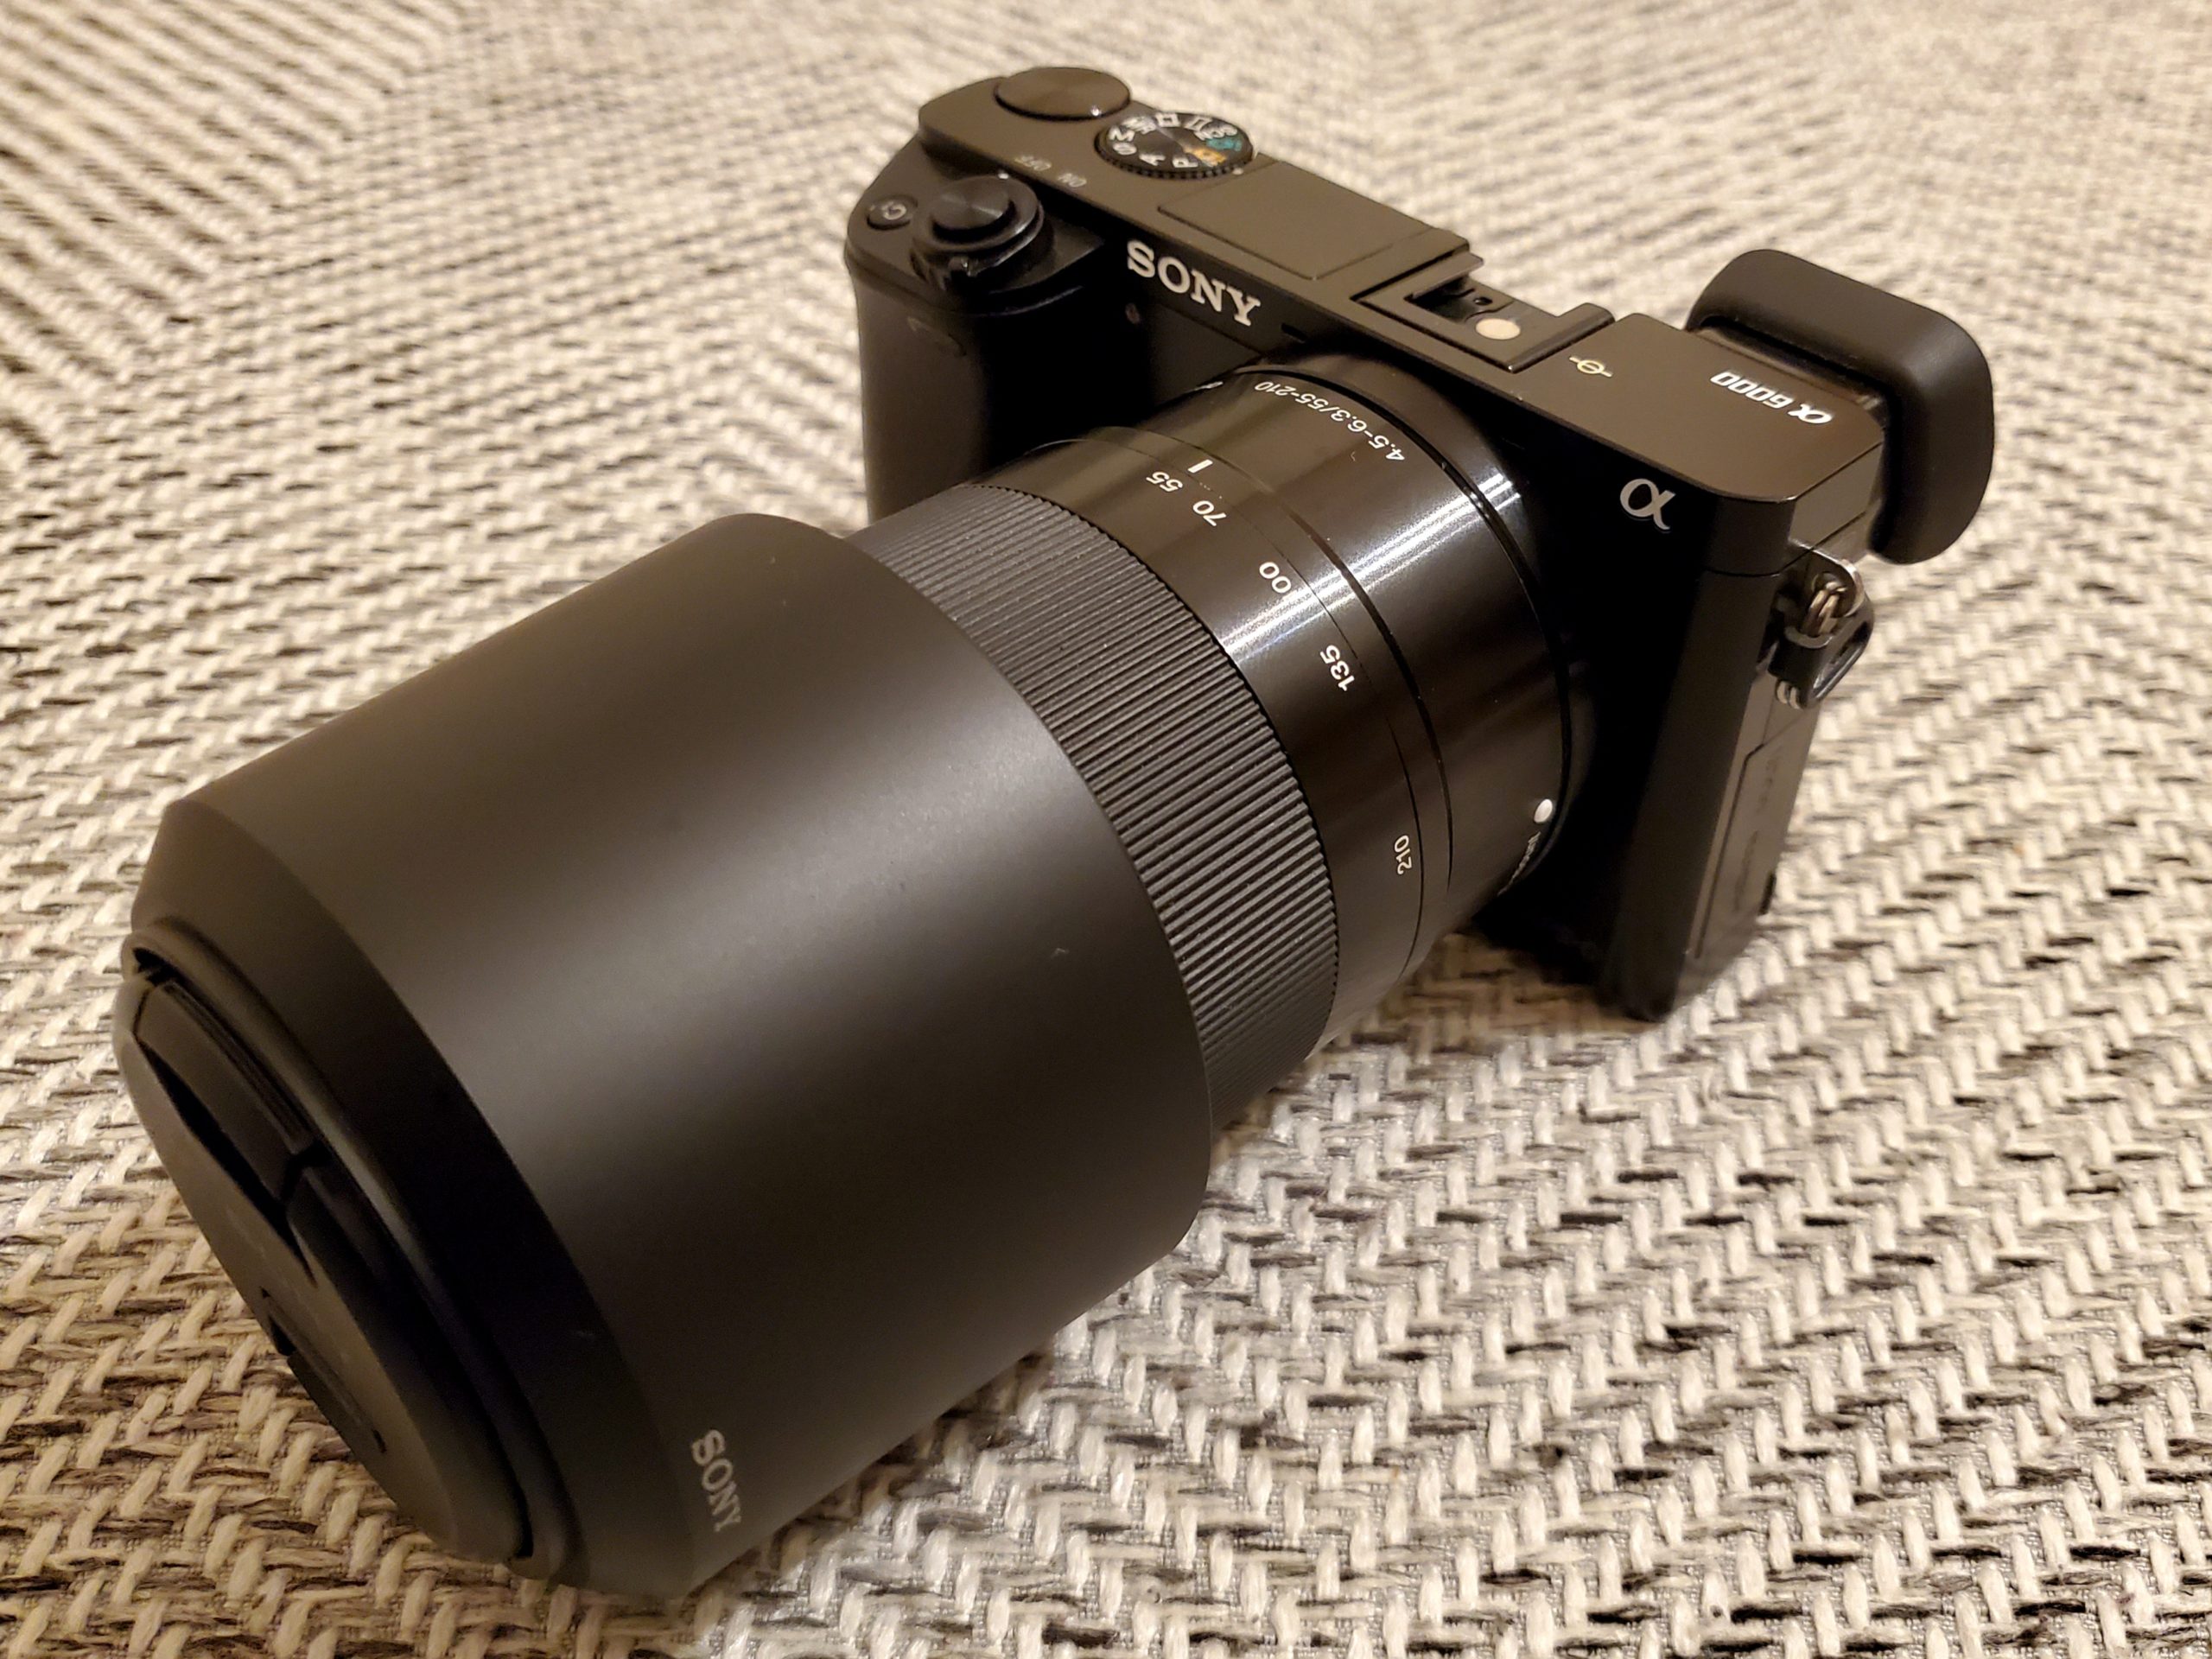 ジャンク】ハードオフで一眼カメラ「SONY α6000」を買ってみた！